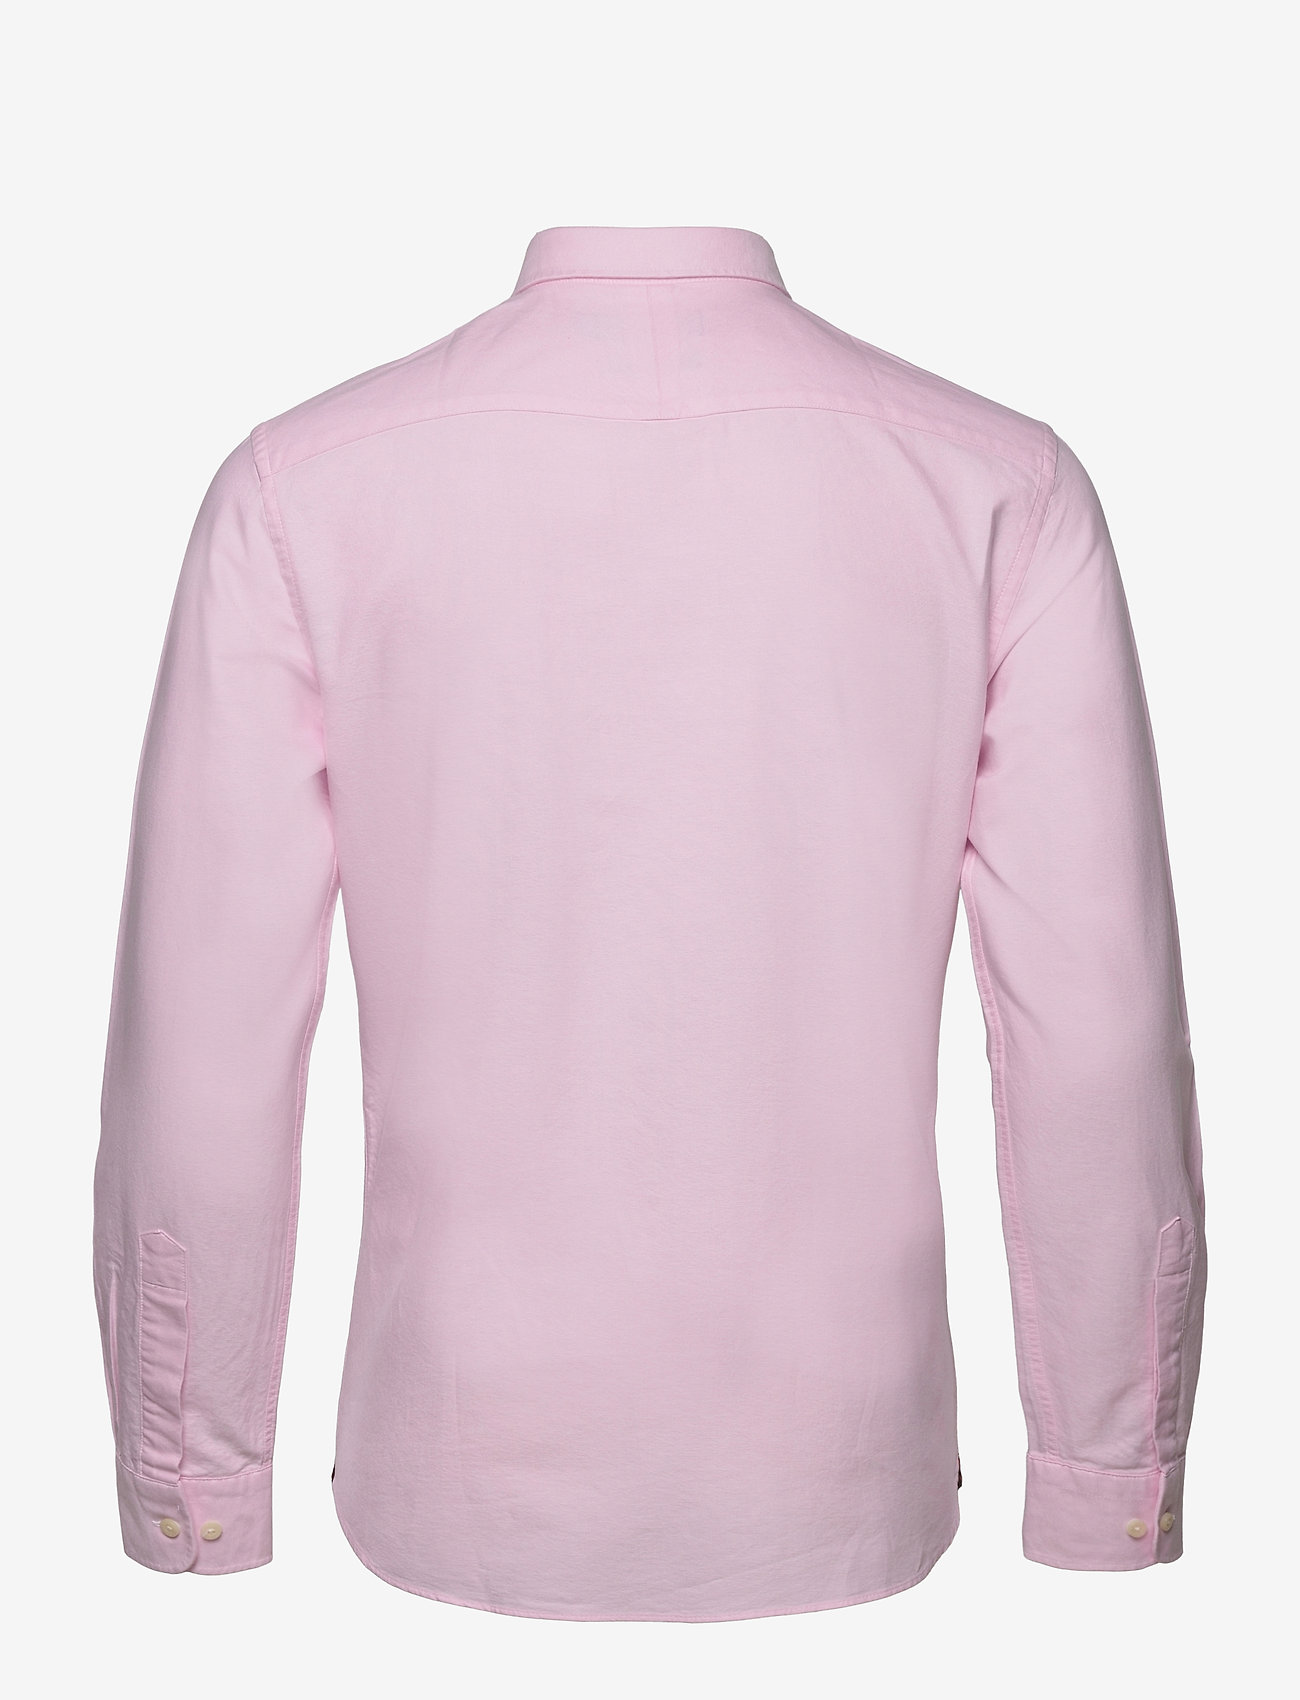 Morris - Douglas Shirt-Slim Fit - bolir - lt pink - 1